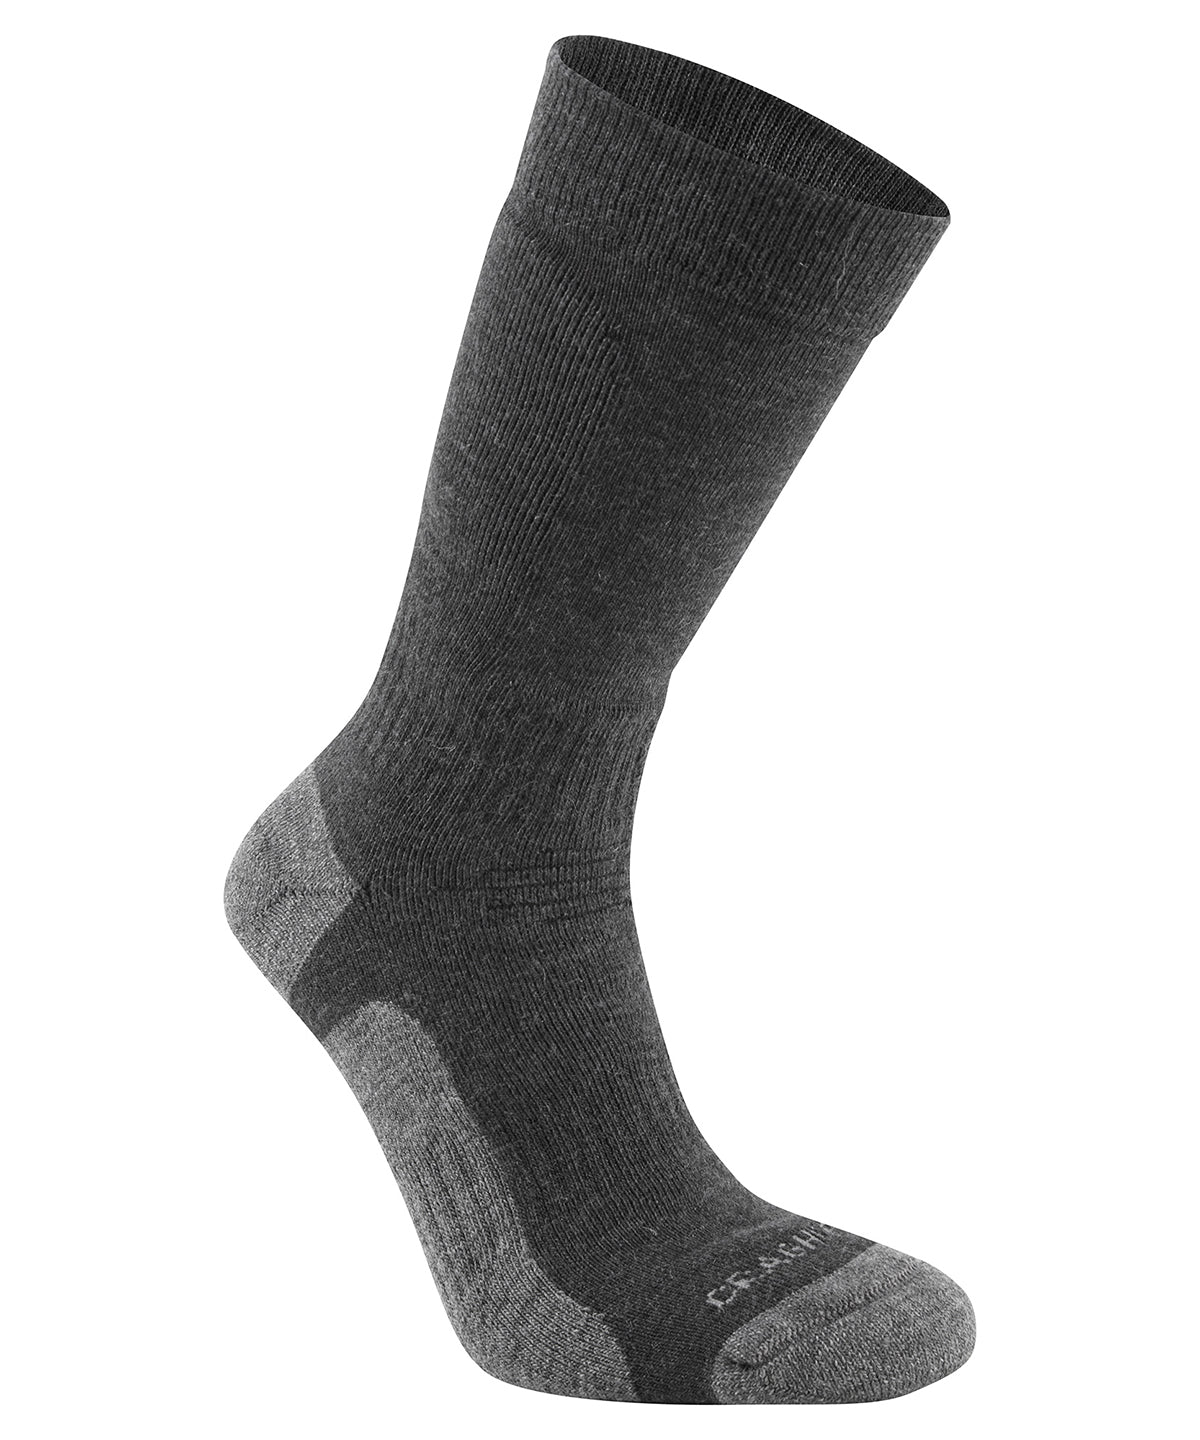 Personalised Socks - Black Craghoppers Expert trek socks